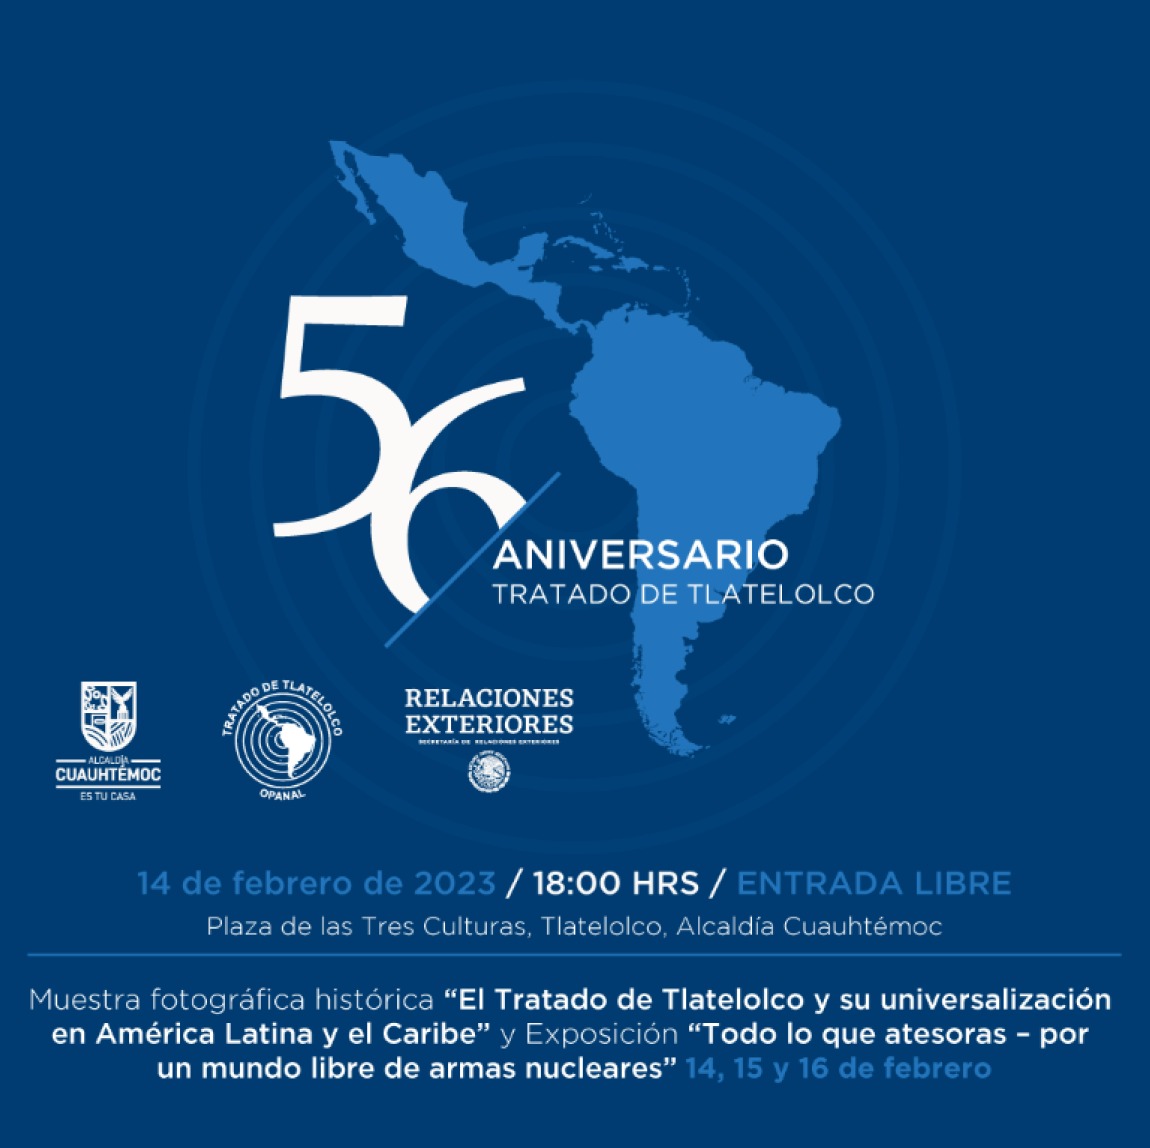 Hoy se celebra el 56º aniversario de la apertura a la firma del Tratado para la Proscripción de las Armas Nucleares en la América Latina y el Caribe, conocido como #TratadoDeTlatelolco que dio origen a la Zona Libre de Armas Nucleares en la región.